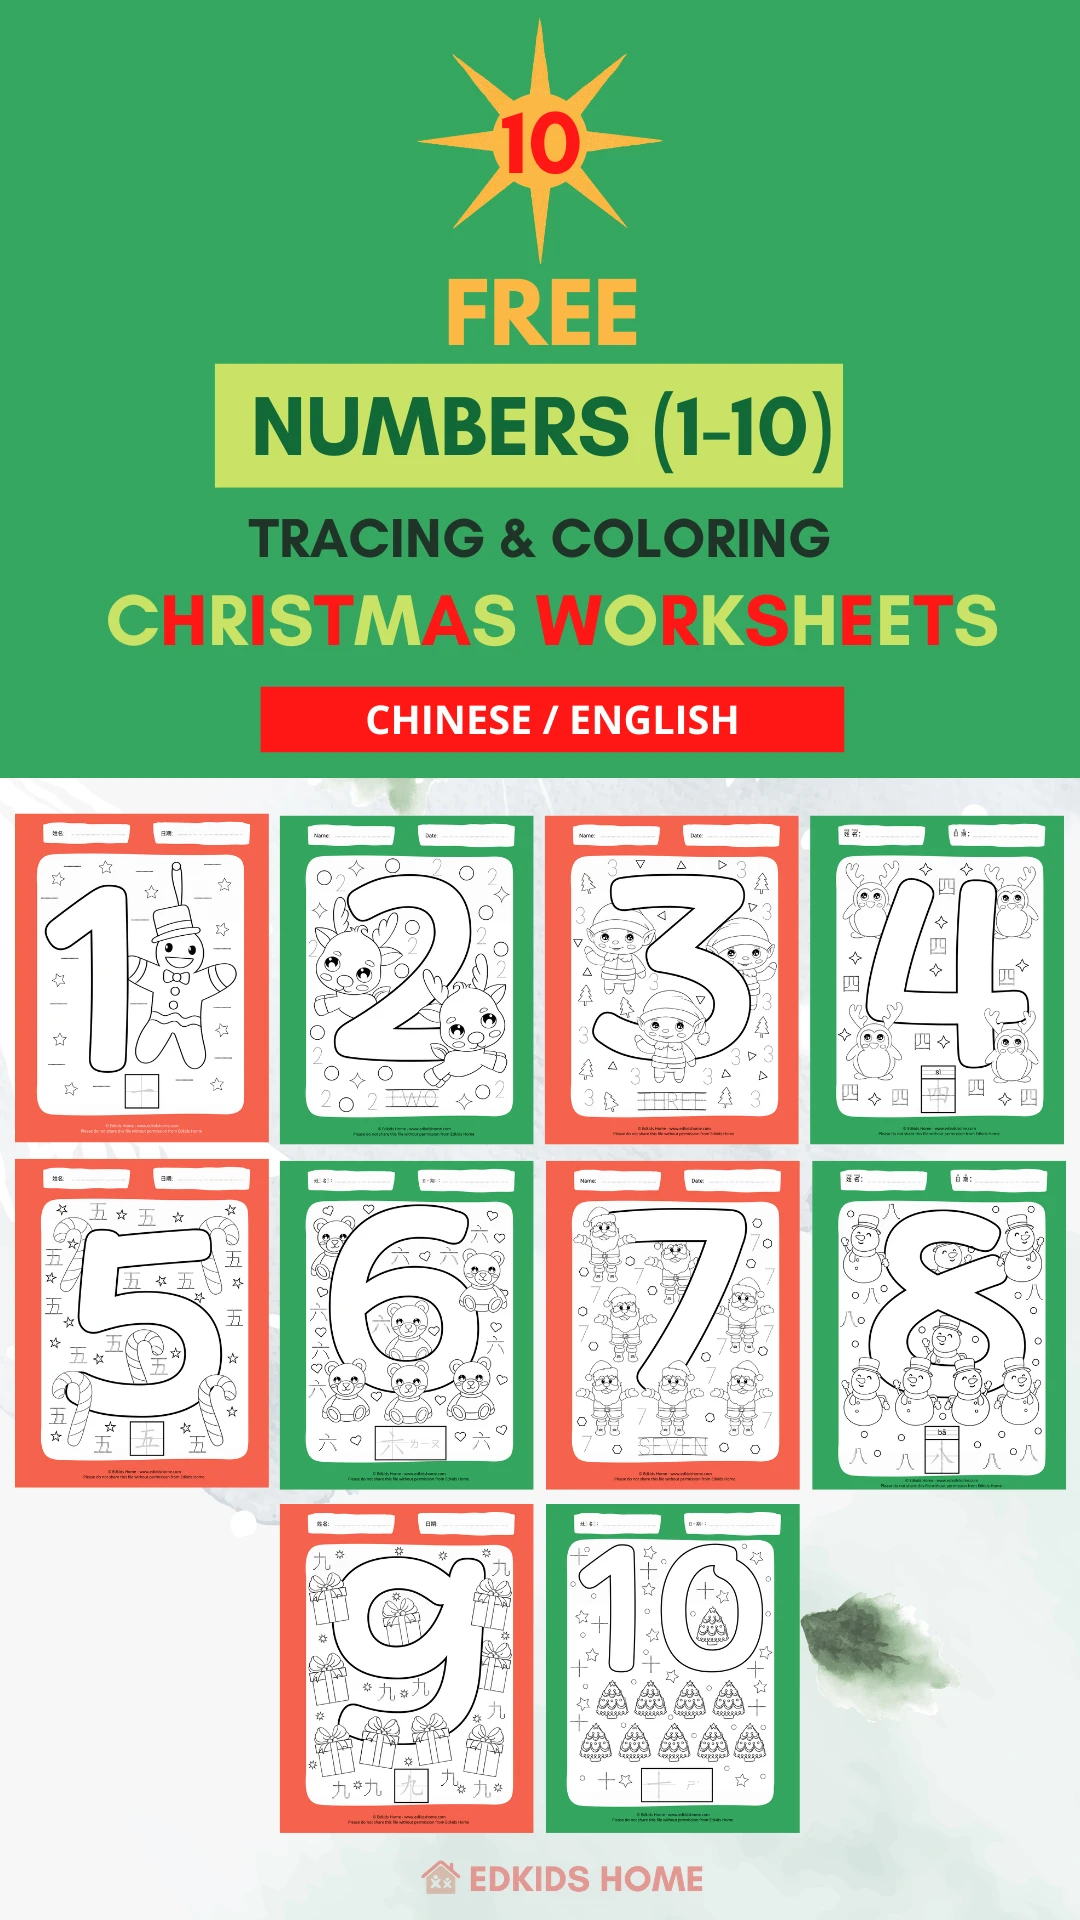 christmas numbers printable